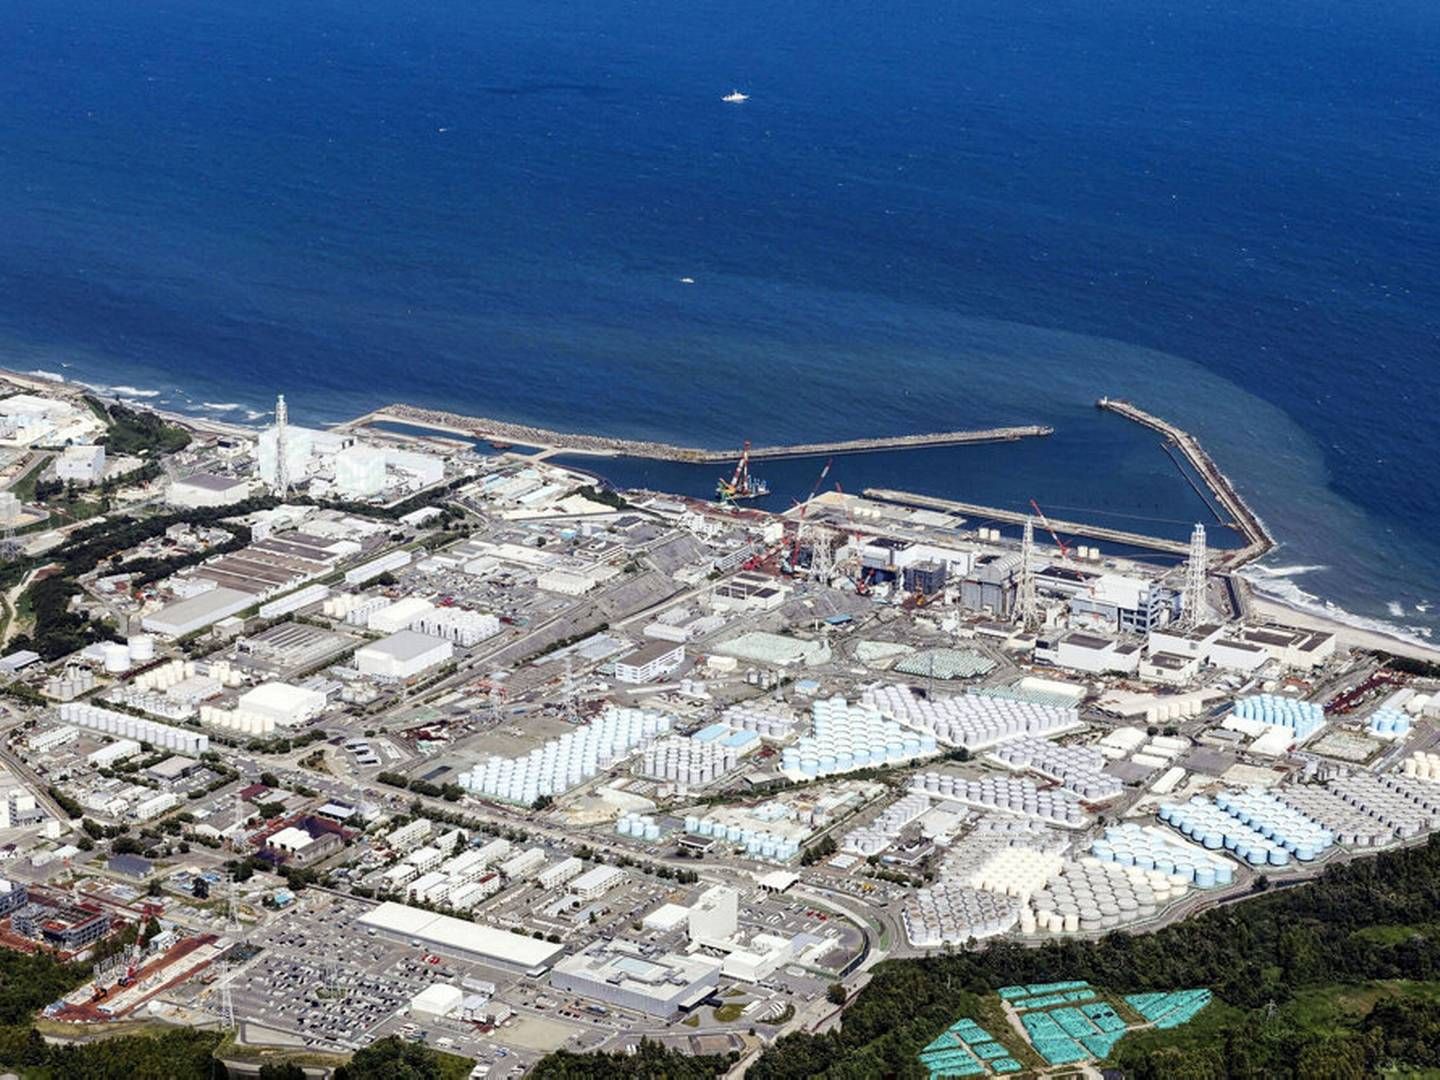 Sådan ser atomkraftværket Fukushima ud fra oven. Kraftværket blev ødelagt i forbindelse med jordskælv i 2011. | Photo: Kyodo/reuters